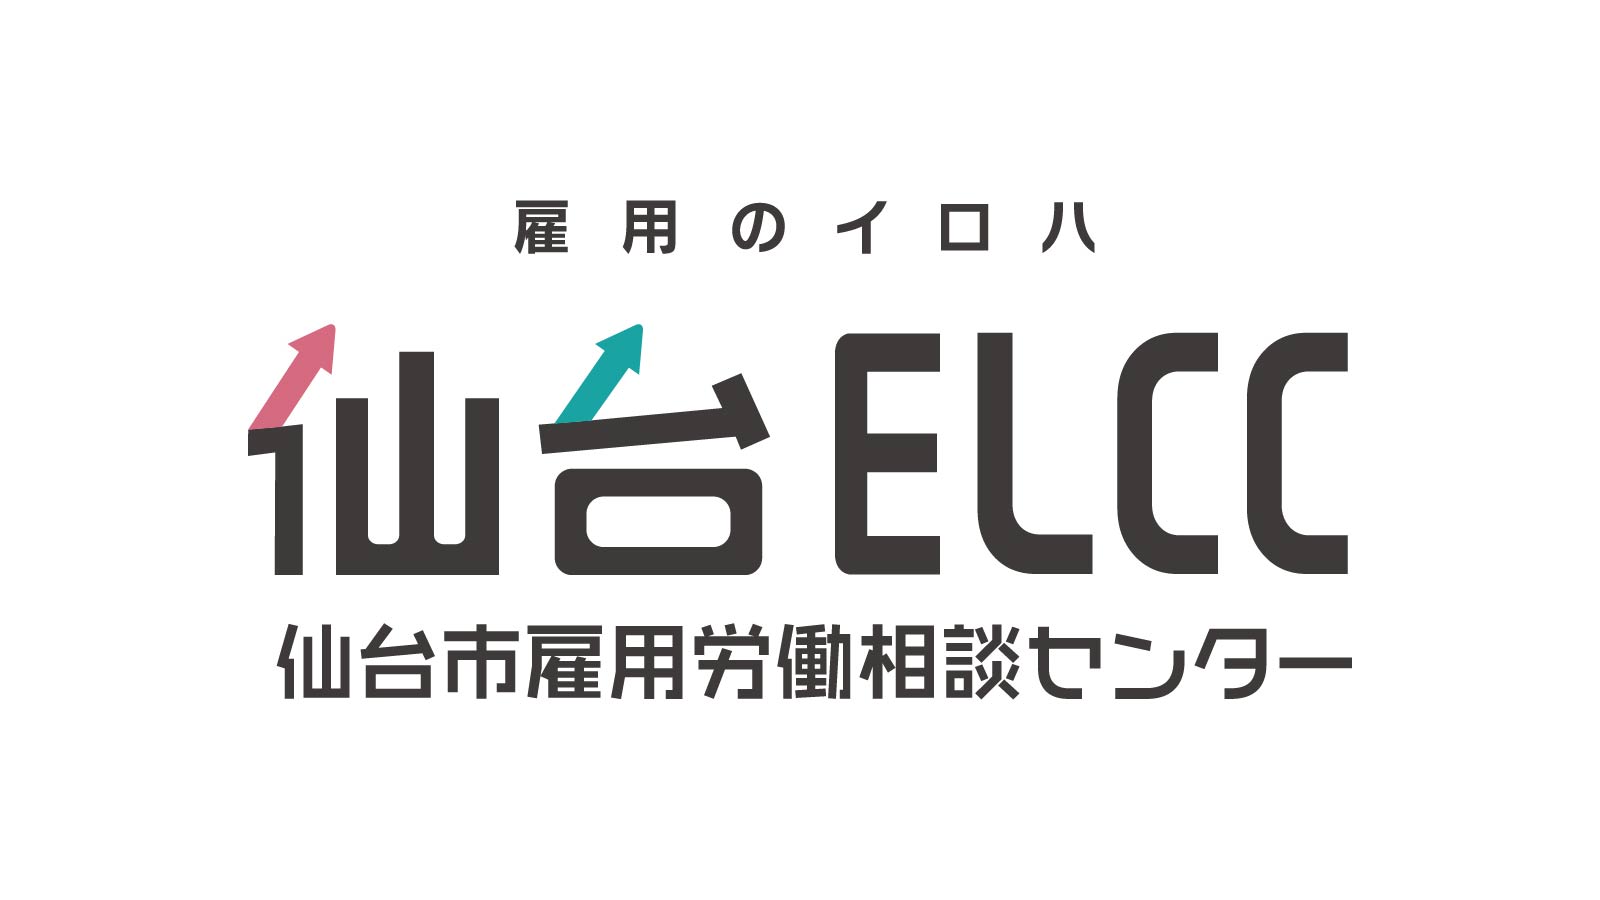 仙台ELCC 主催セミナー コロナ禍をきっかけに急速に普及を始めたテレワーク 「テレワークを適切に行うための労務管理について」